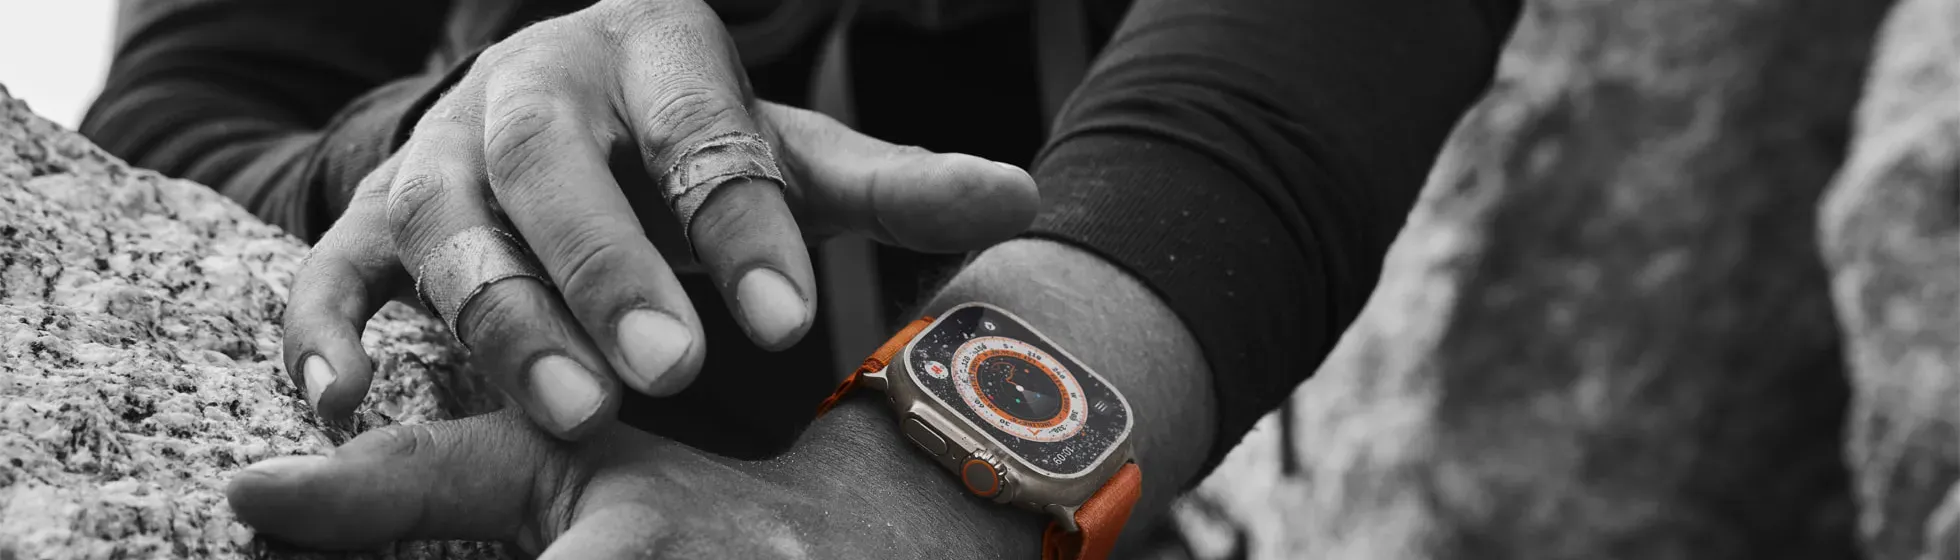 Smartwatch Apple Watch SE 40,0 mm 32 GB em Promoção é no Buscapé